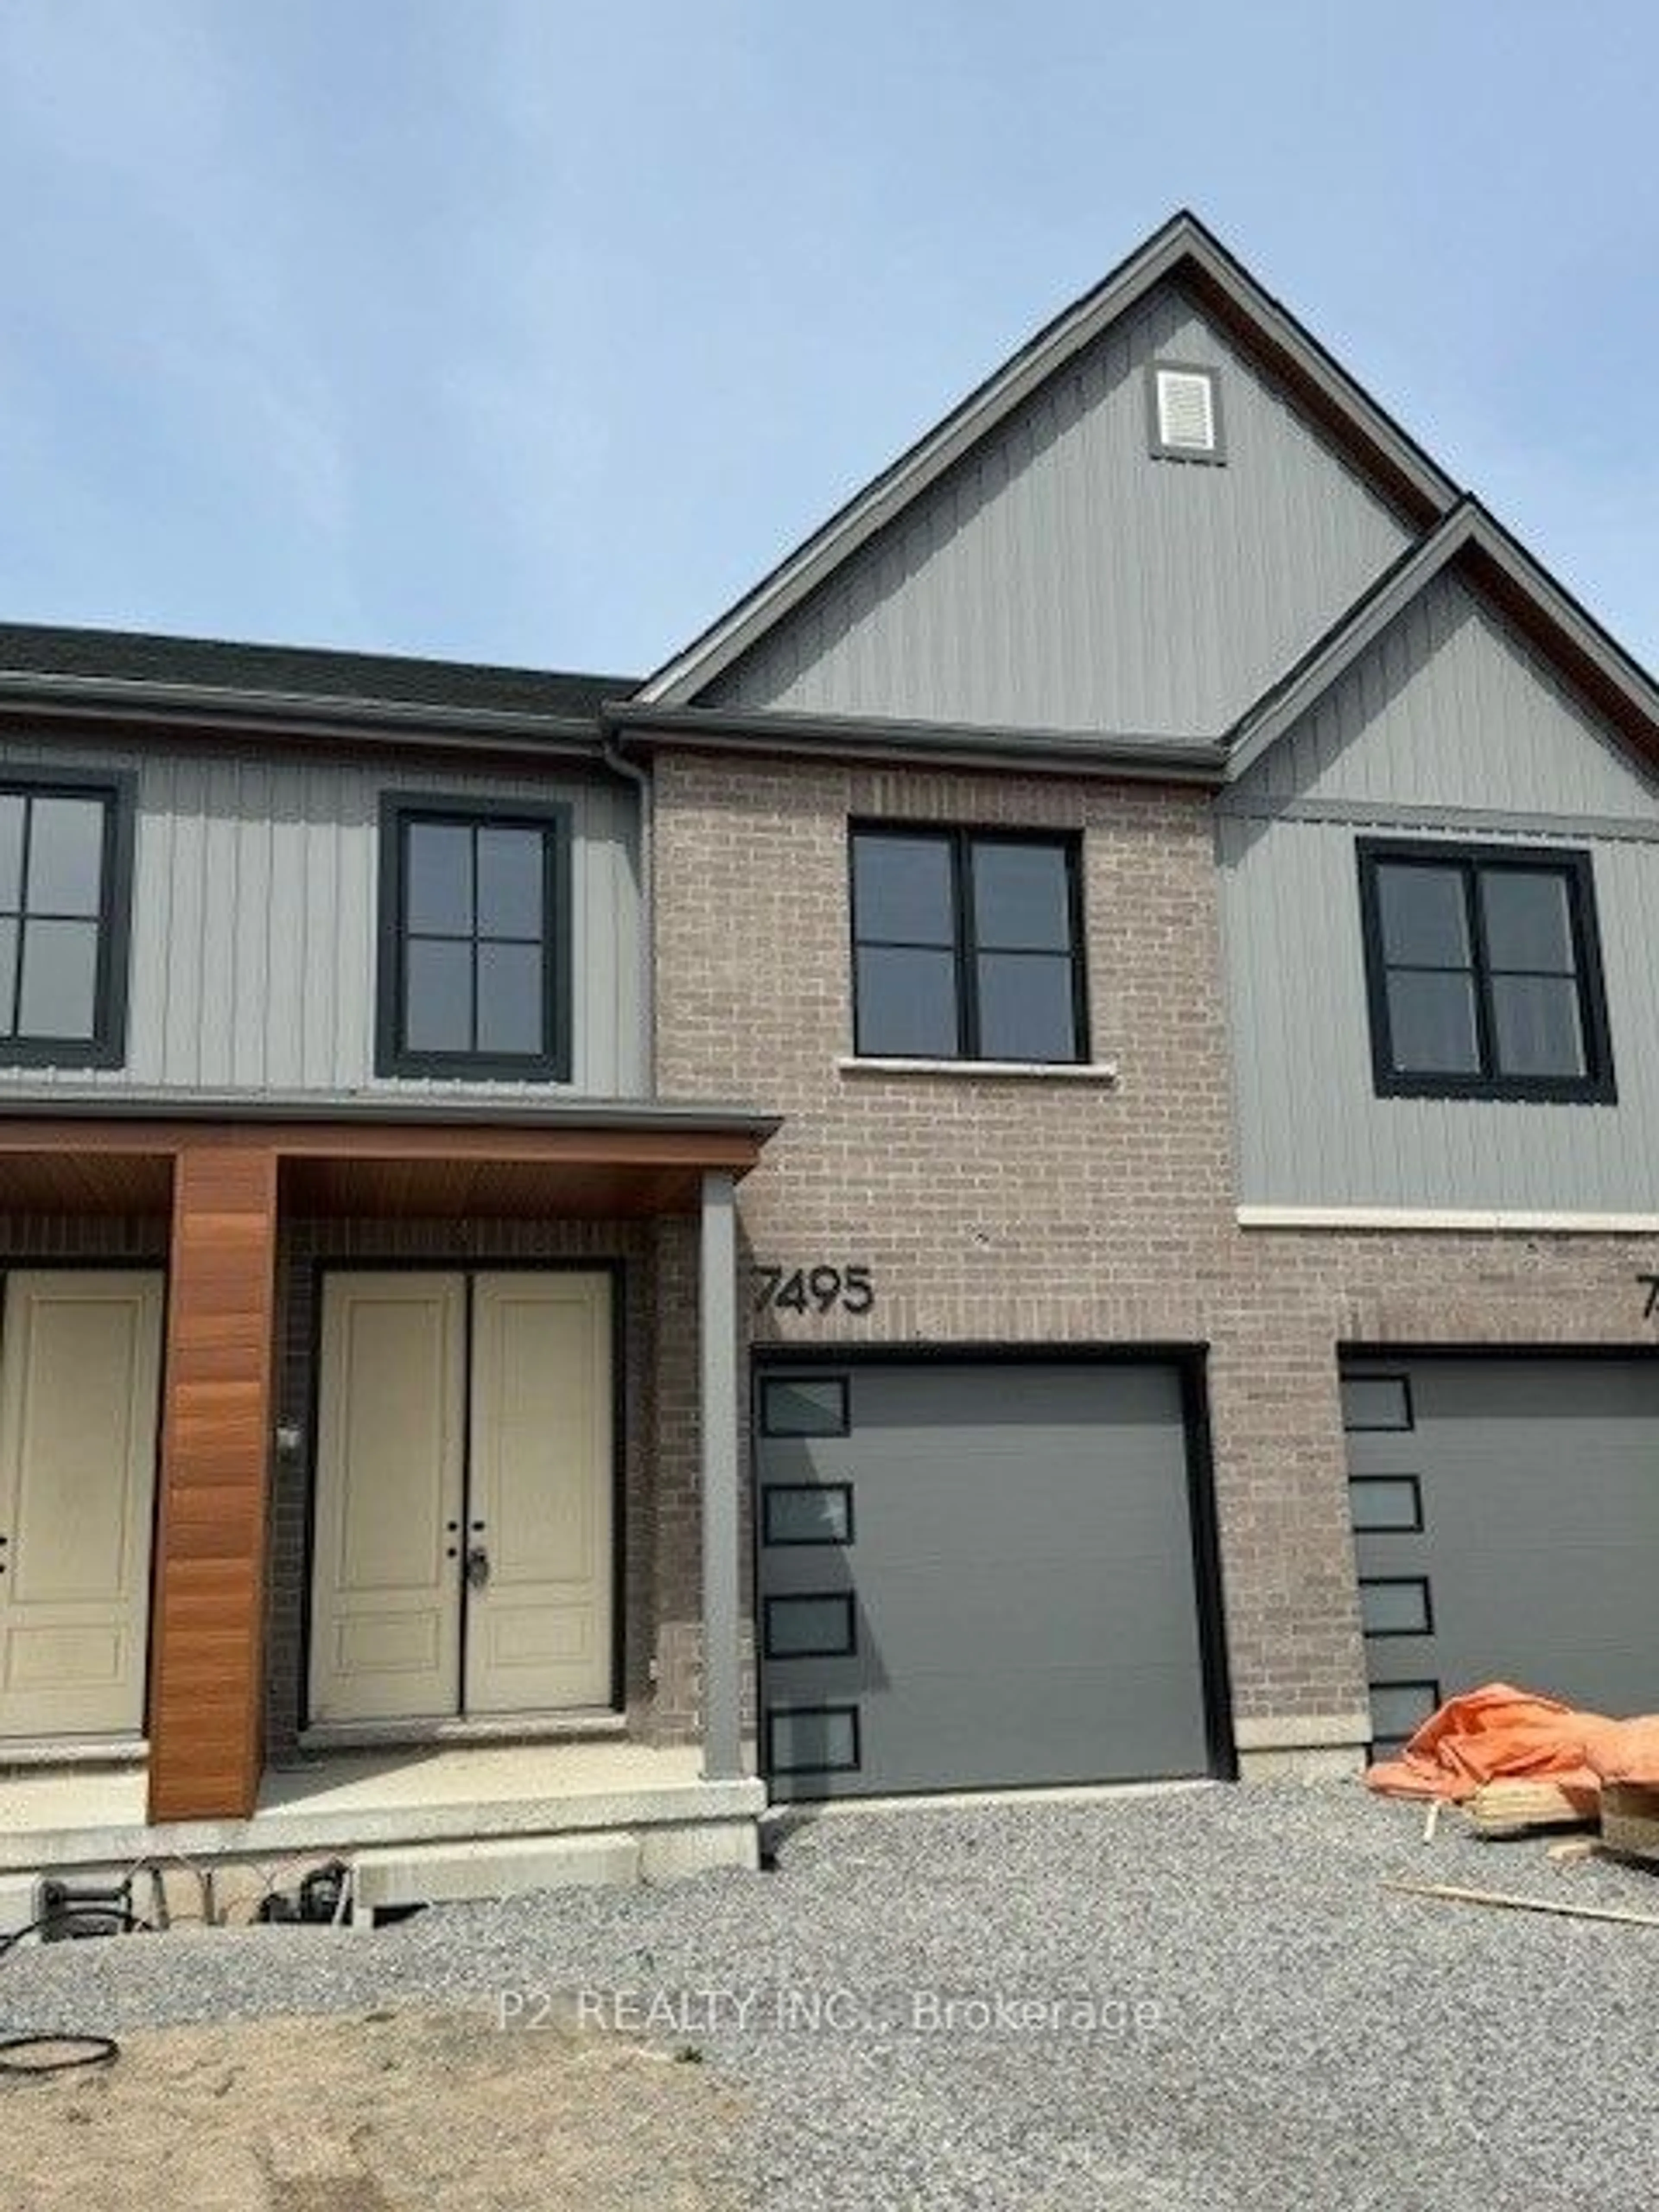 Home with brick exterior material for 7495 Splendour Dr, Niagara Falls Ontario L2H 3V8